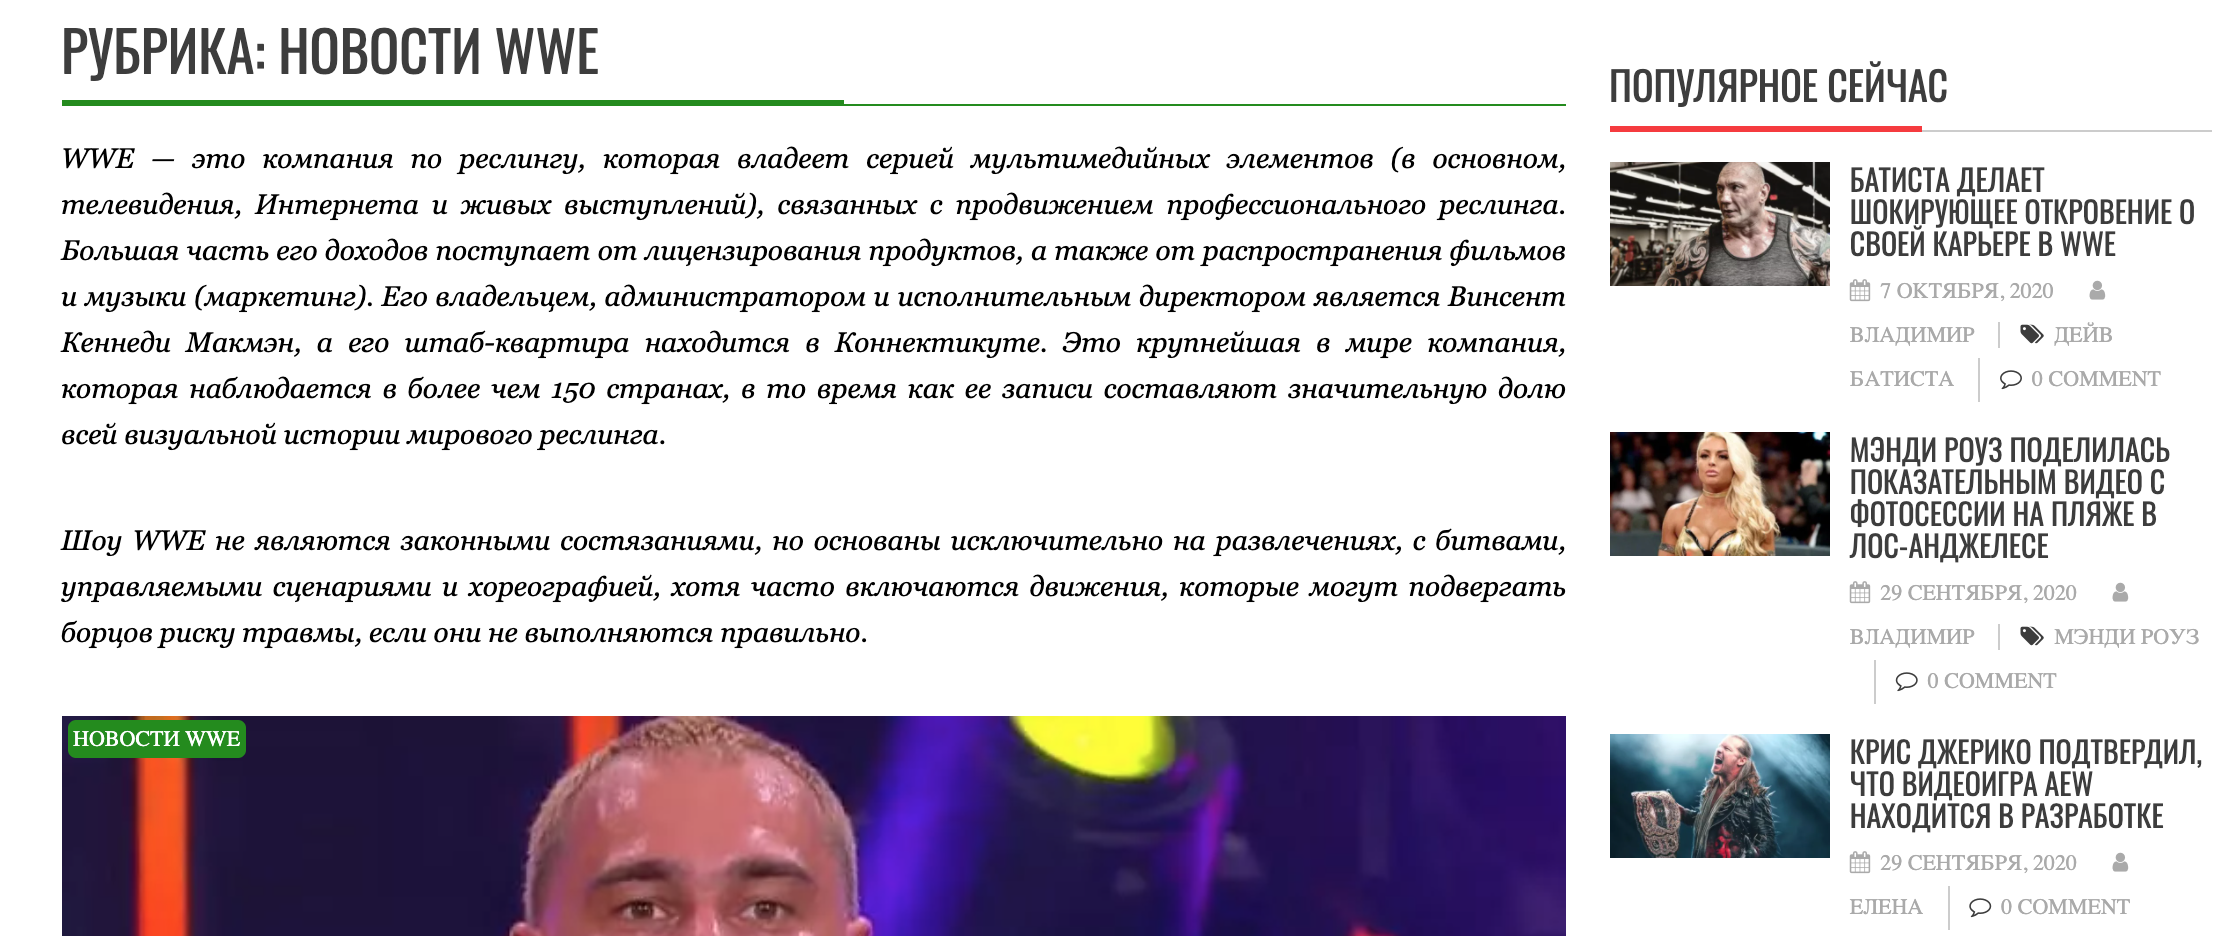 Новости WWE на tv-wwe.ru